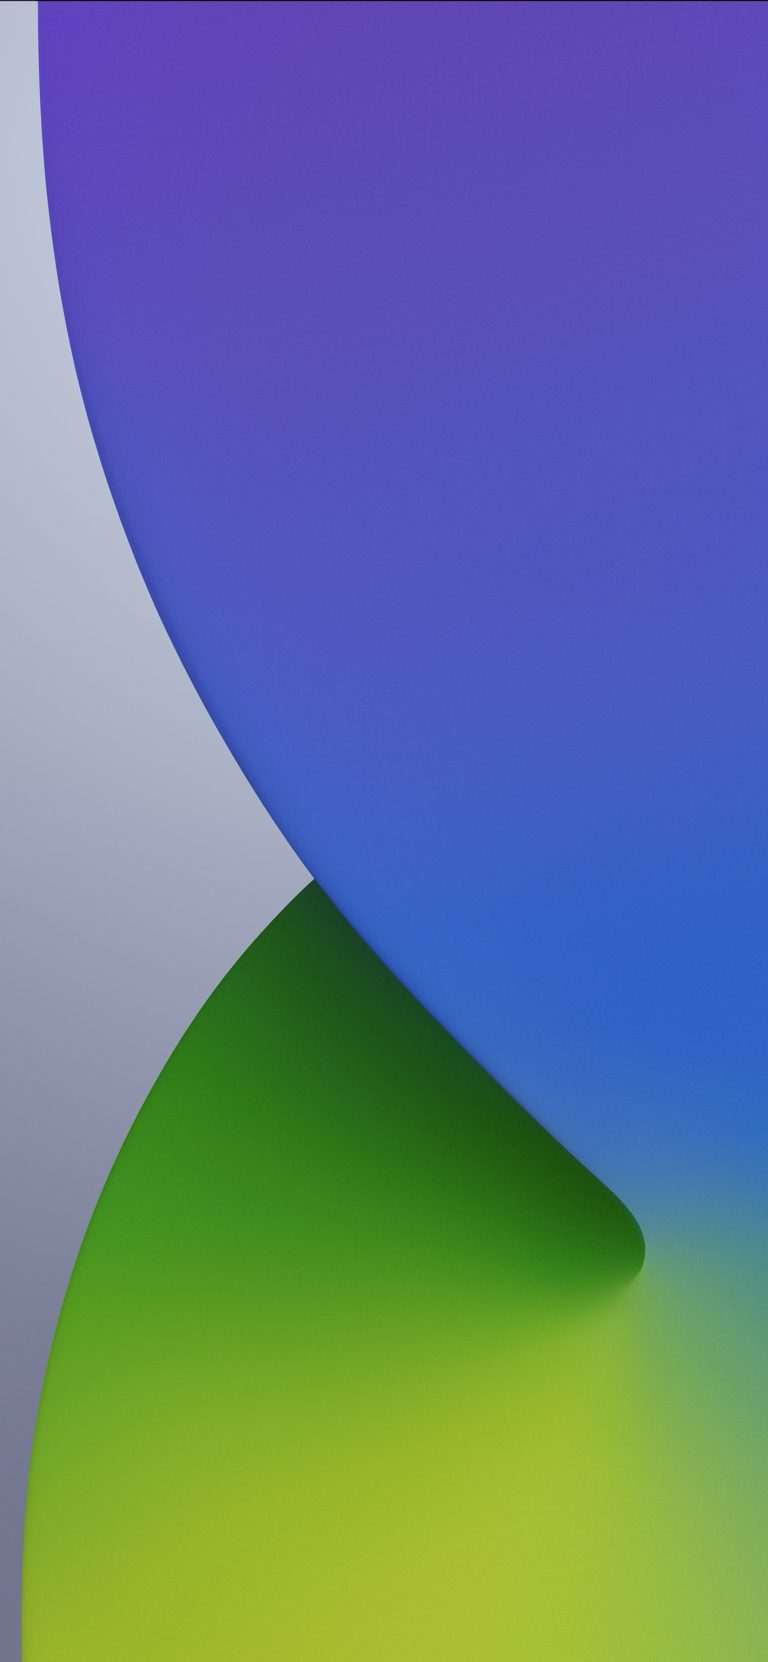 دانلود والپیپر رسمی iOS 14 - آی او اس ۱۴ برای آیفون ۳